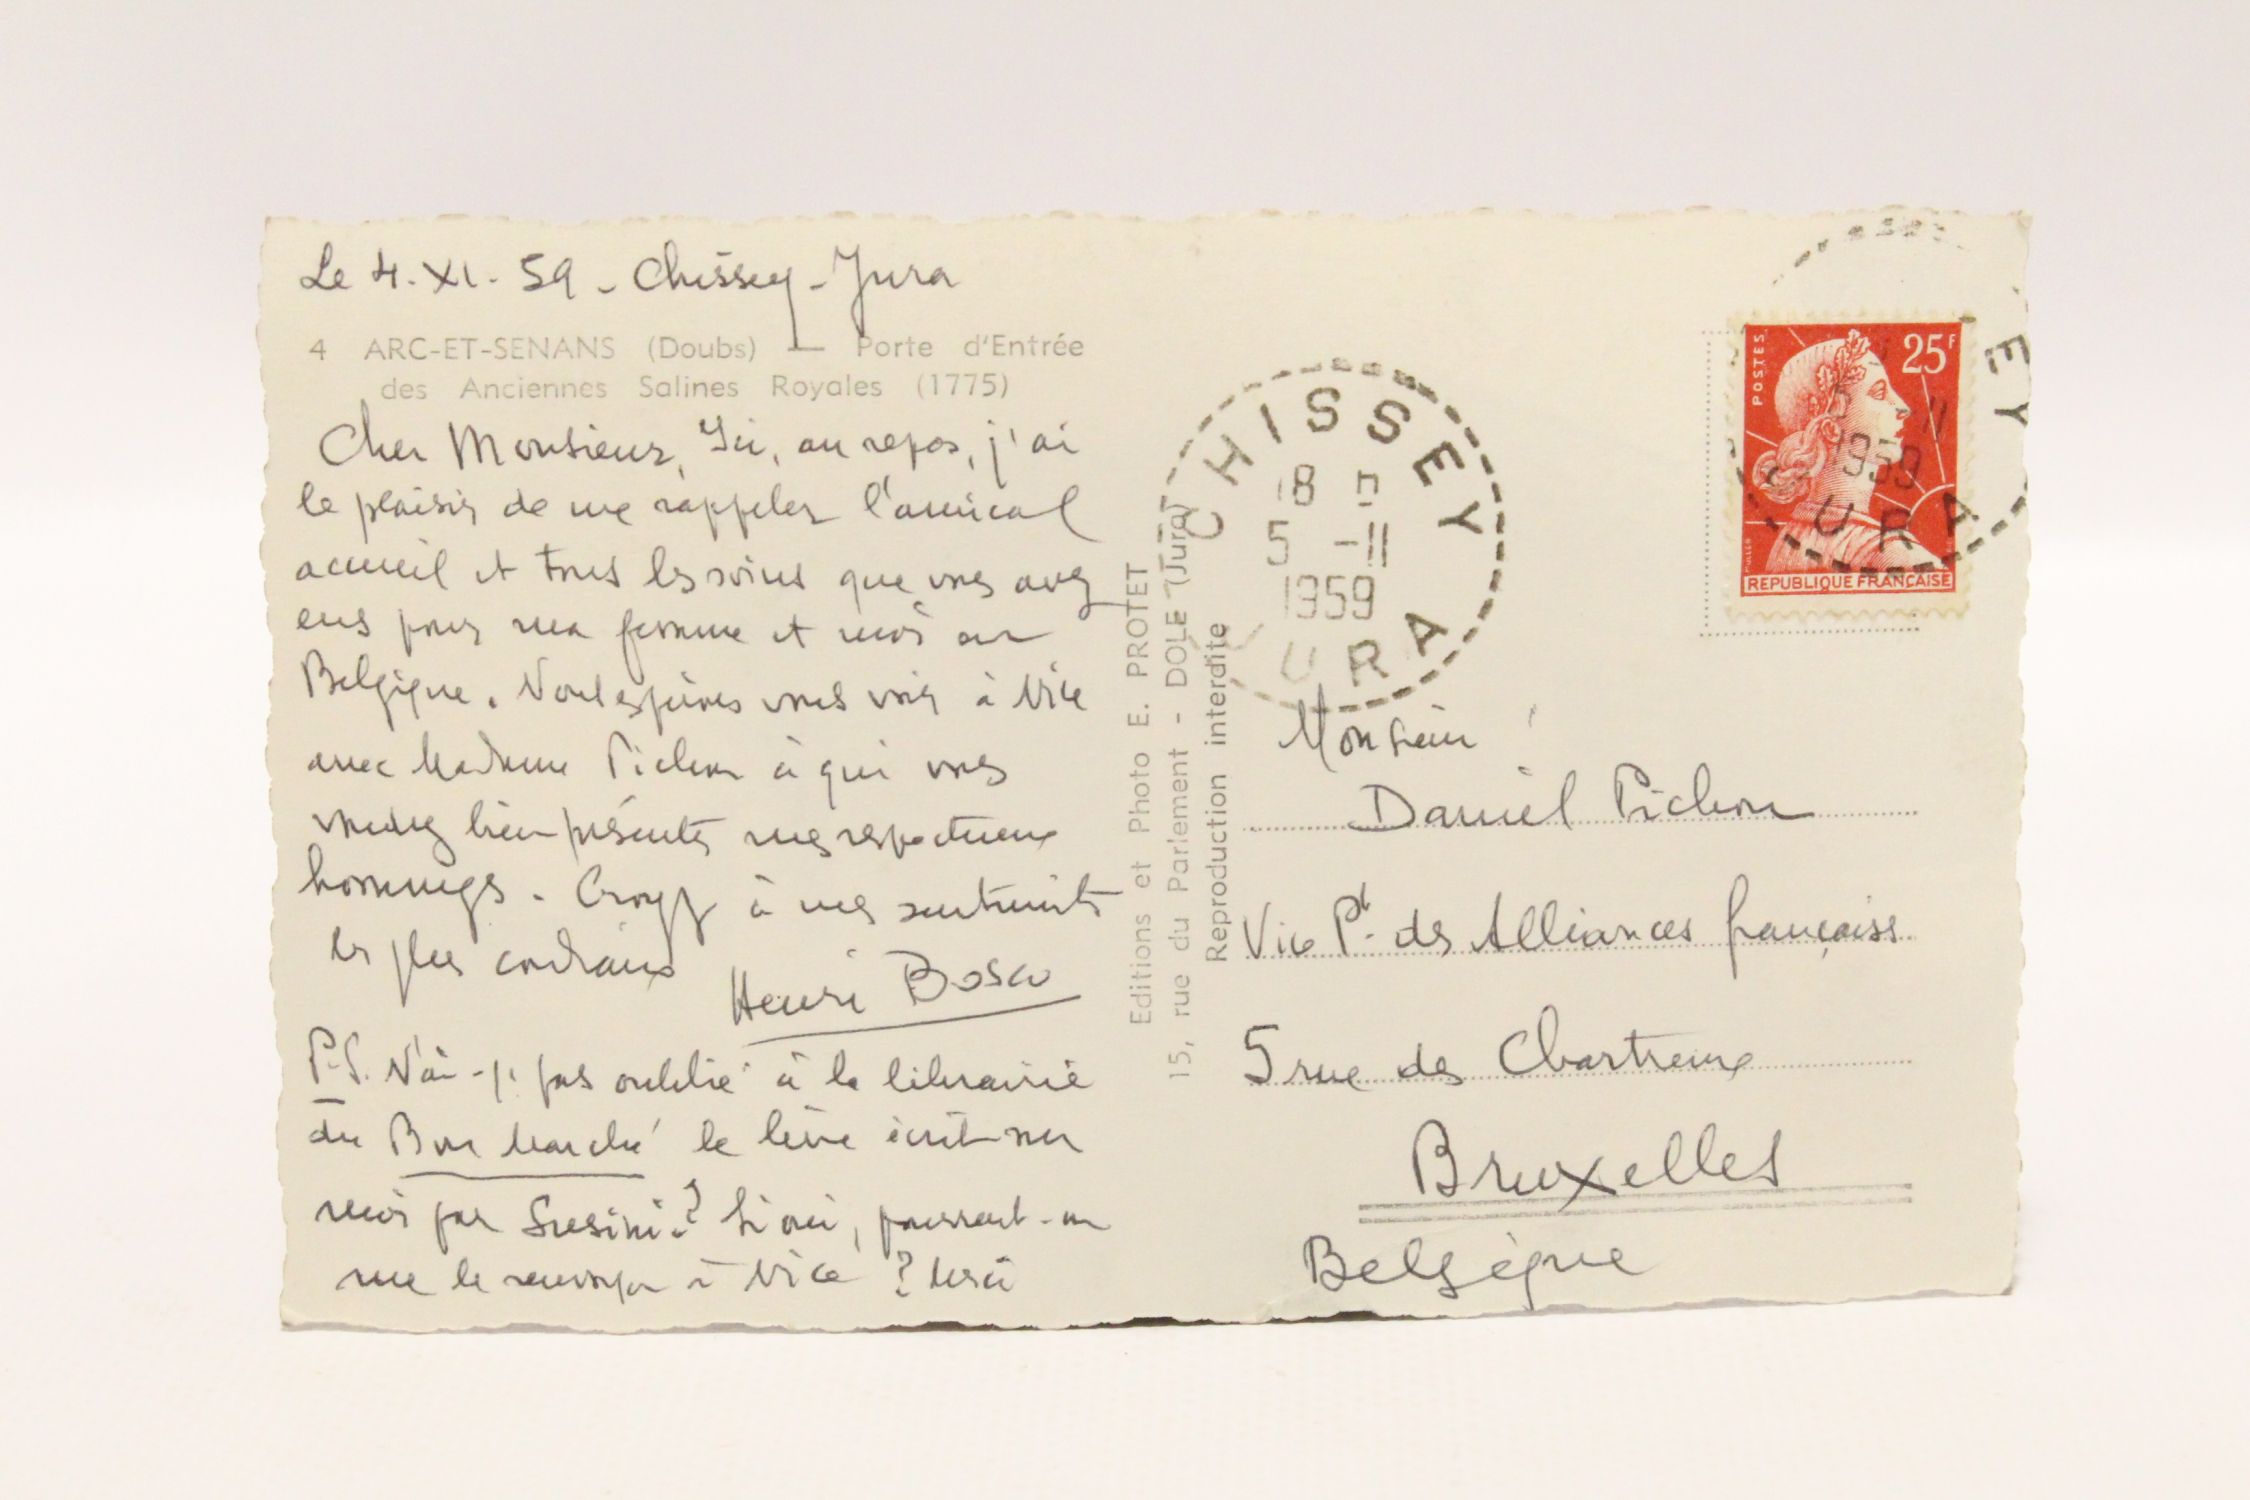 BOSCO : Carte postale autographe signée de Henri Bosco à Daniel Pichon ...